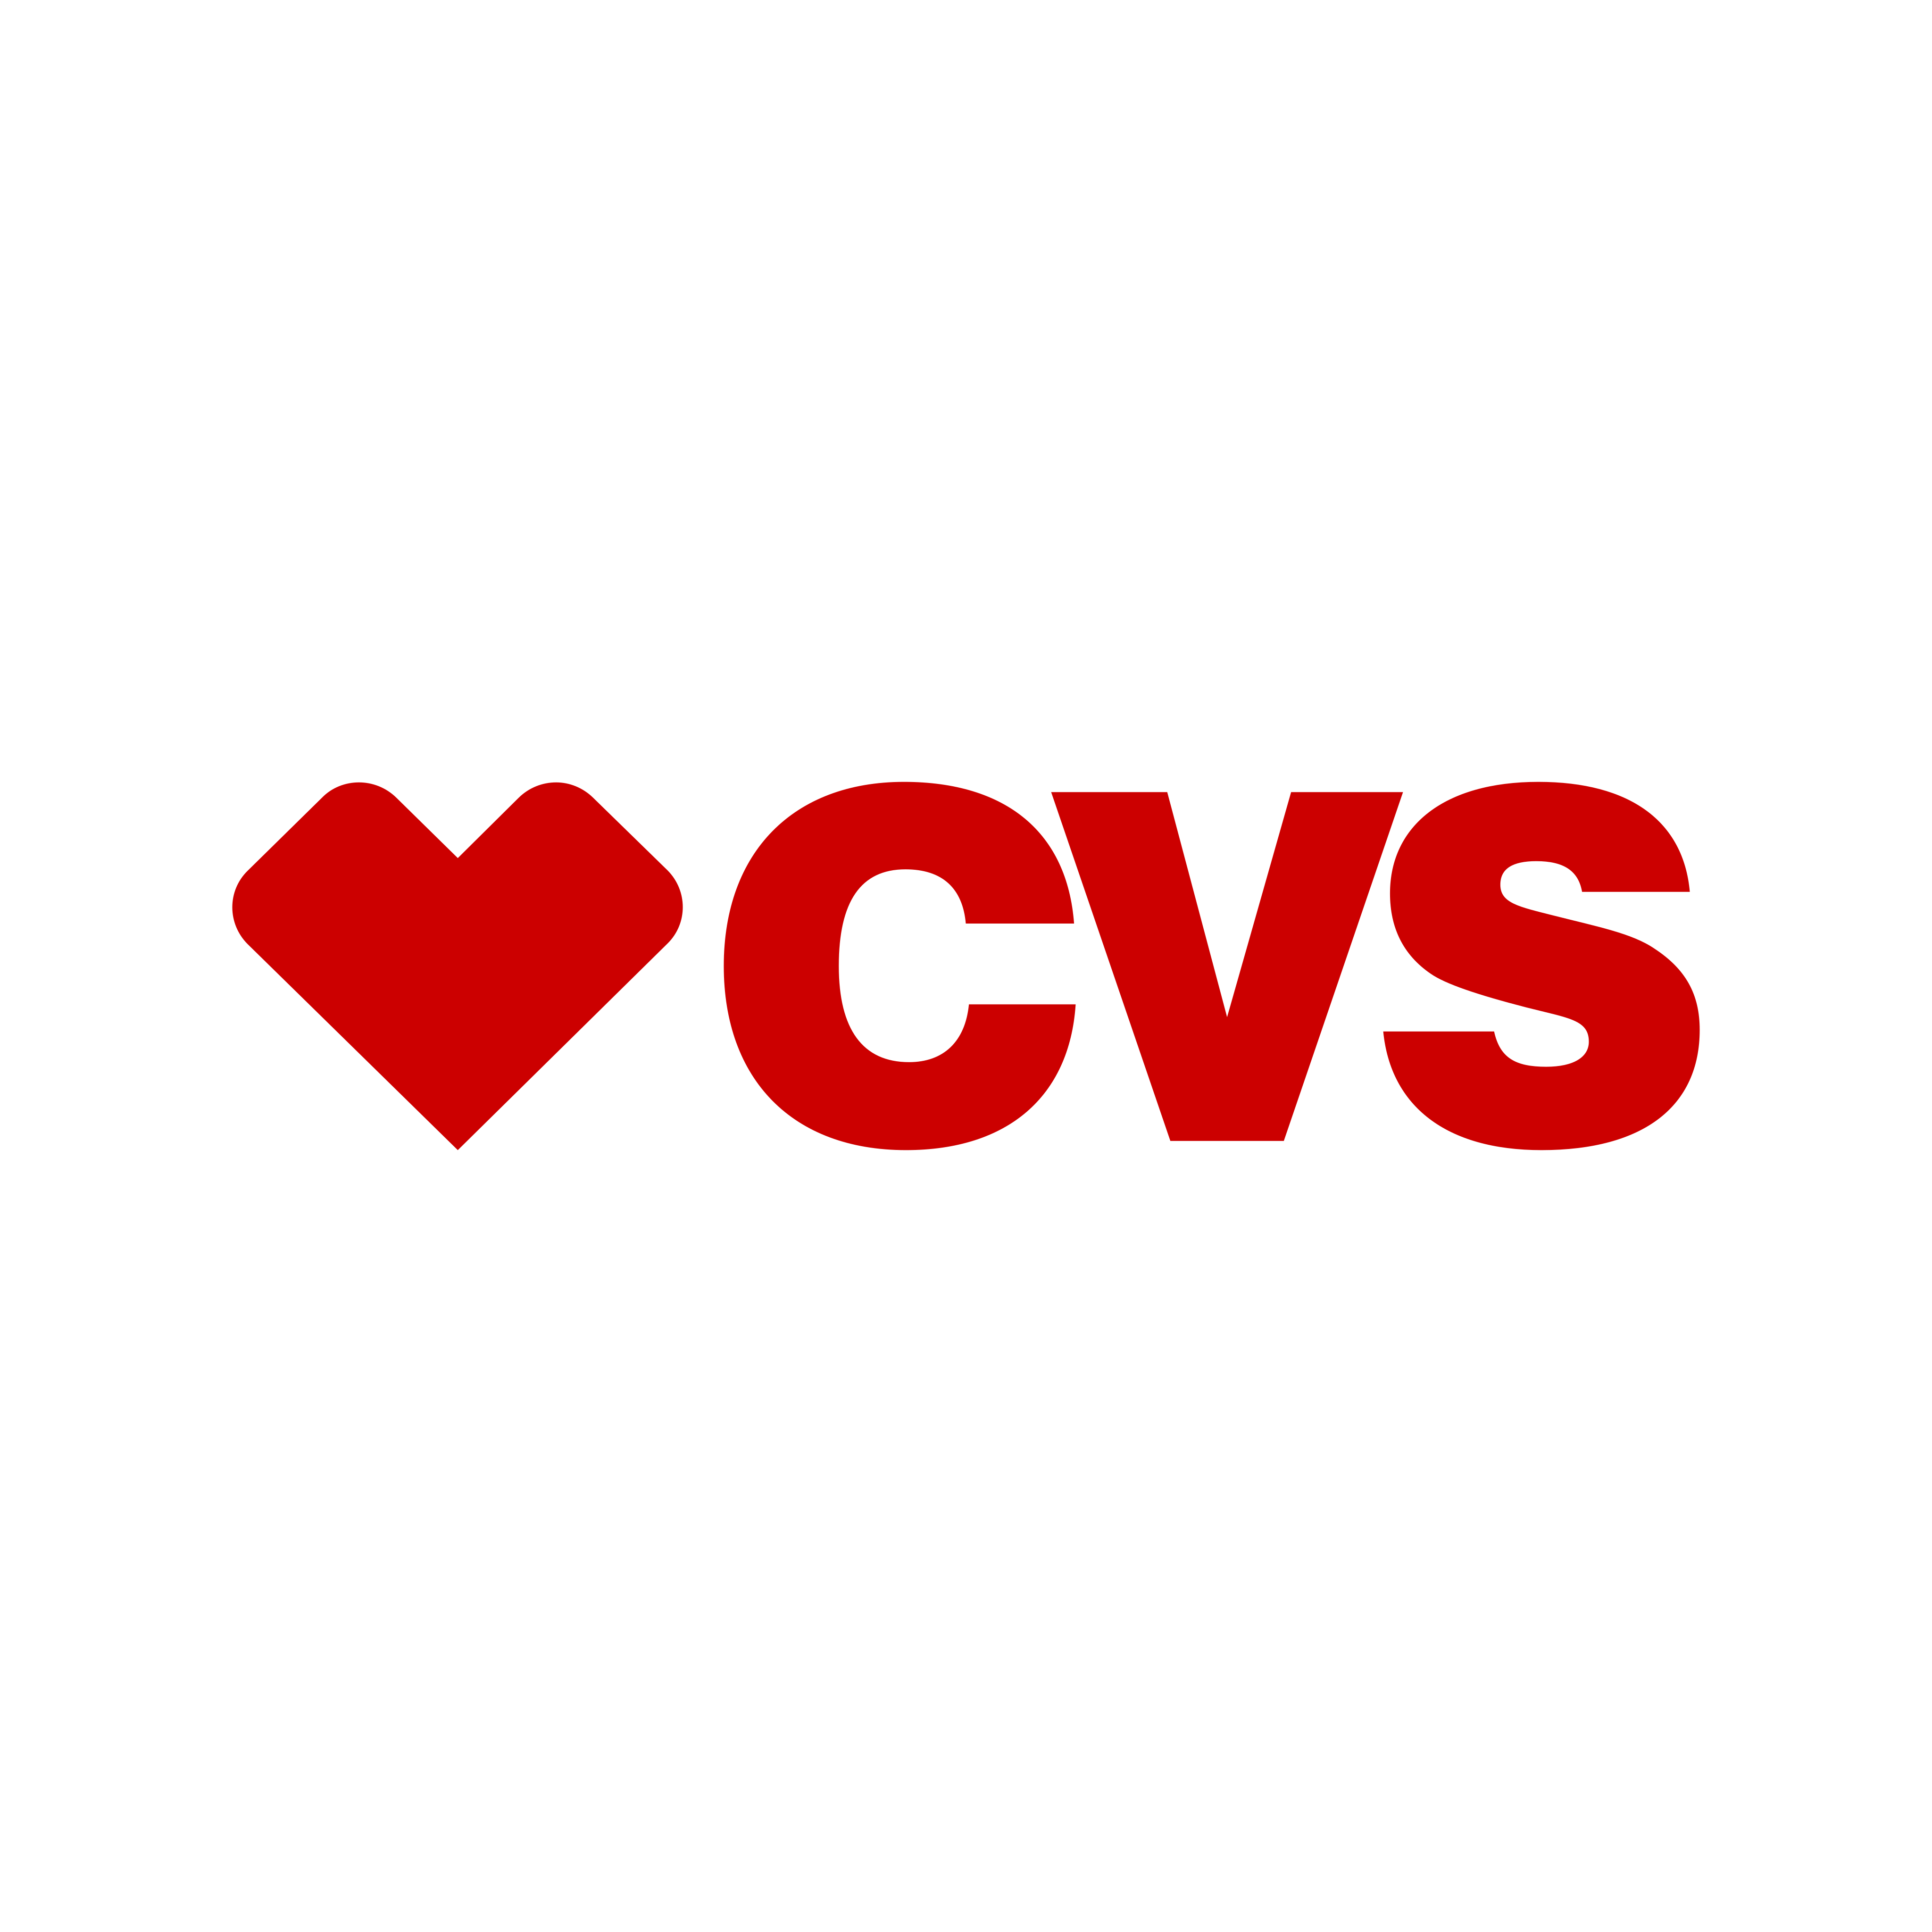 cvs logo 0 - CVS Pharmacy Logo